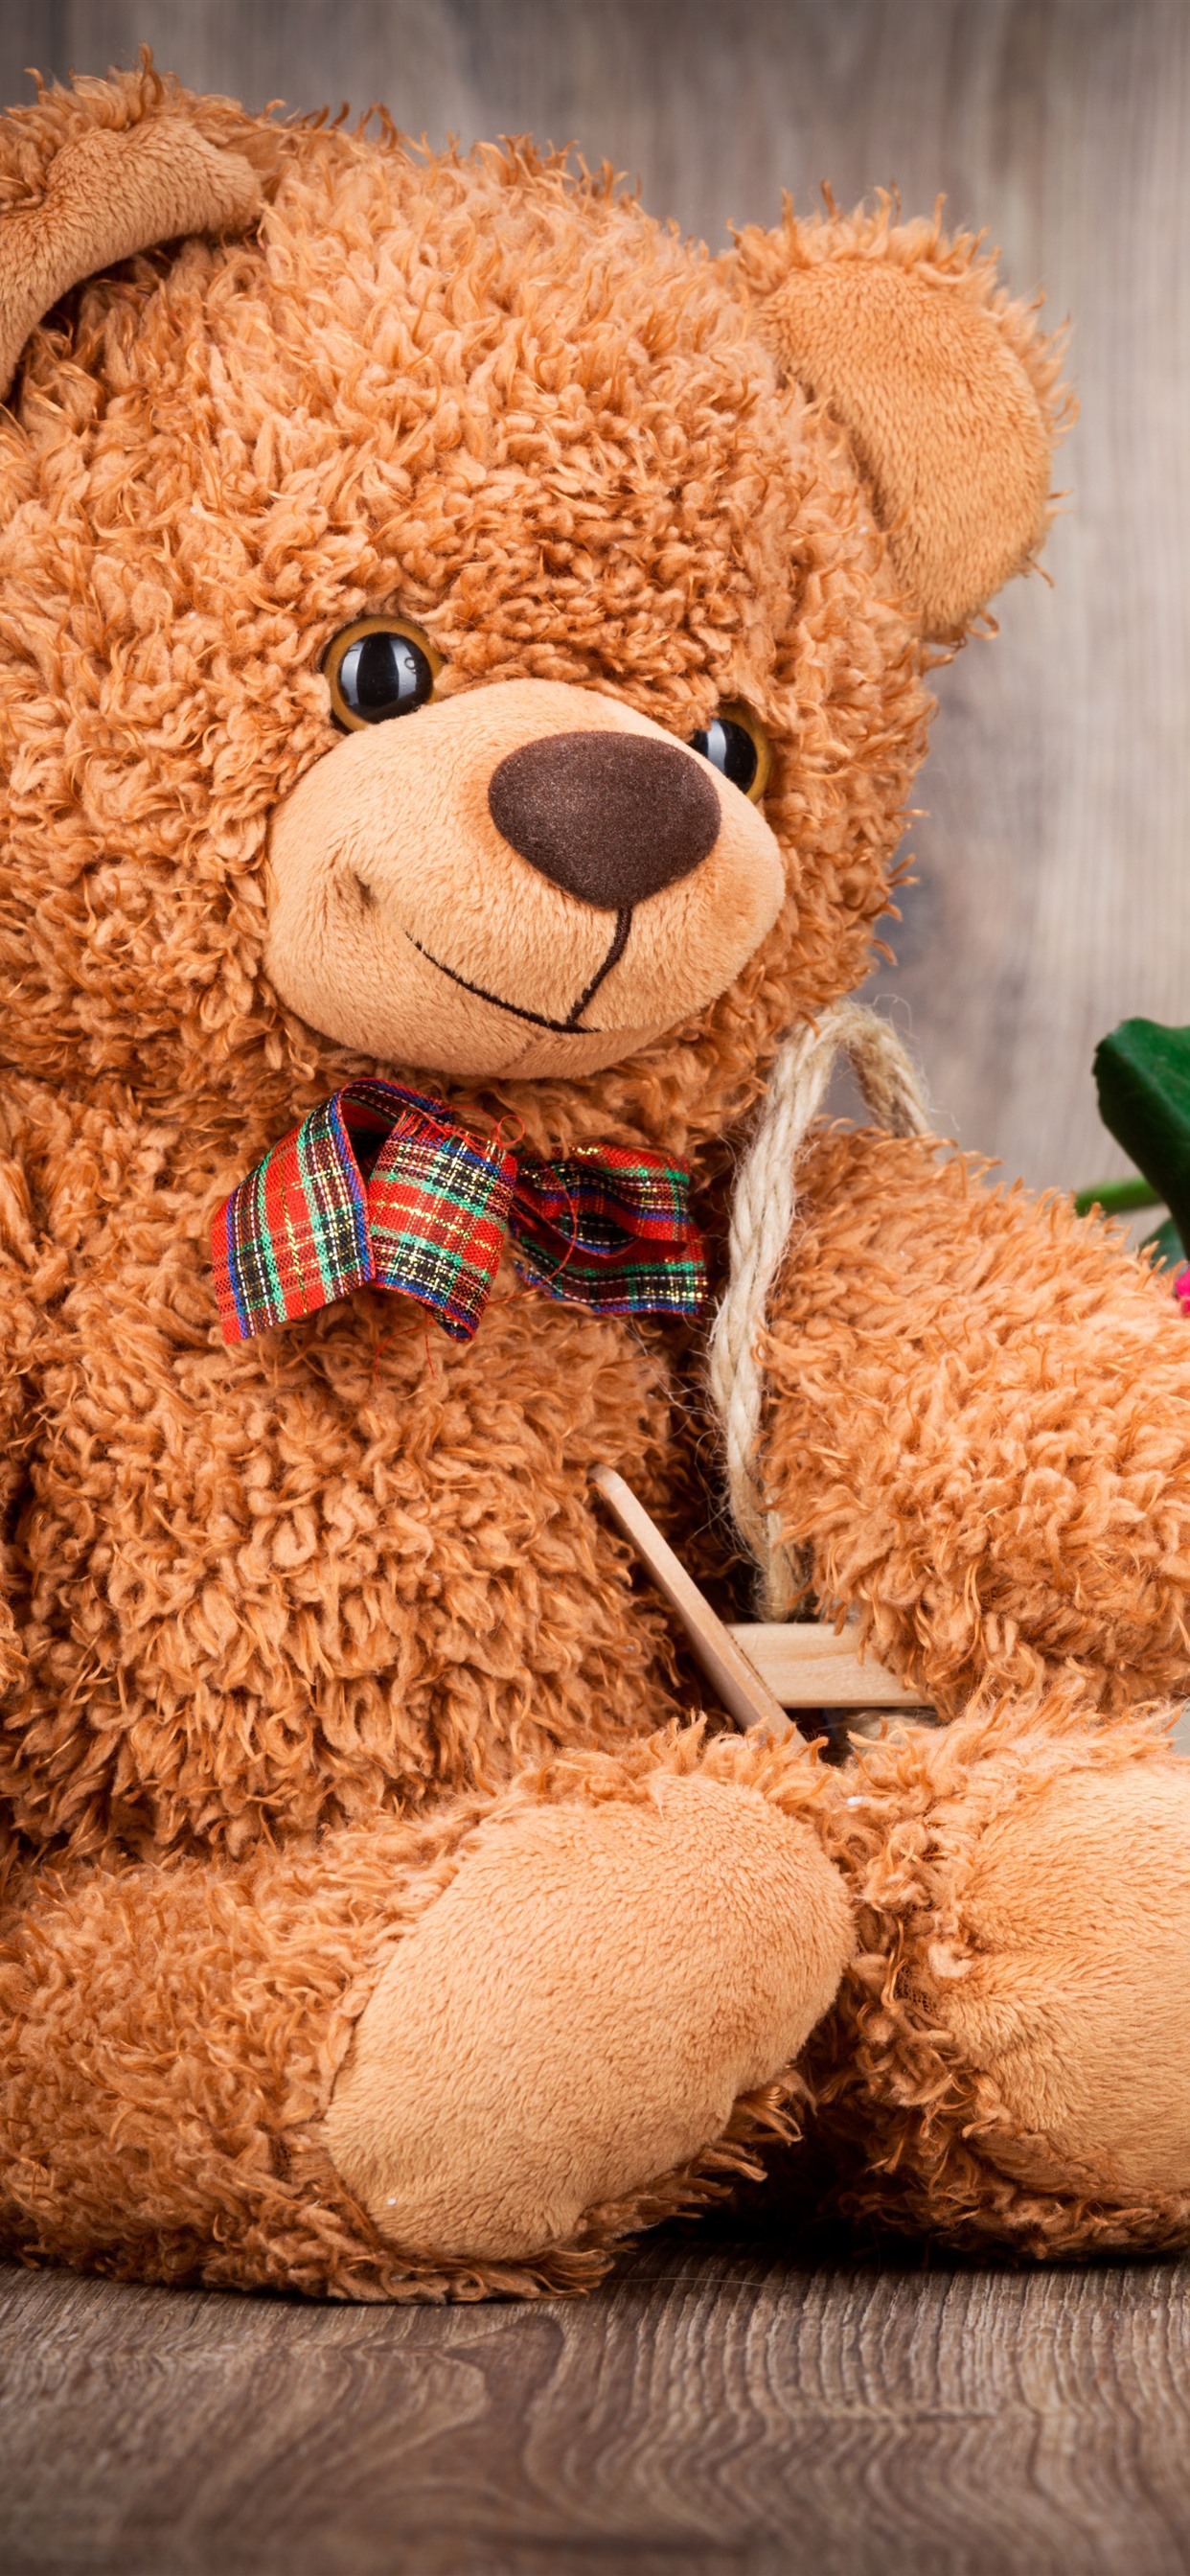 teddy bear wallpaper,teddy bear,stuffed toy,toy,plush,bear